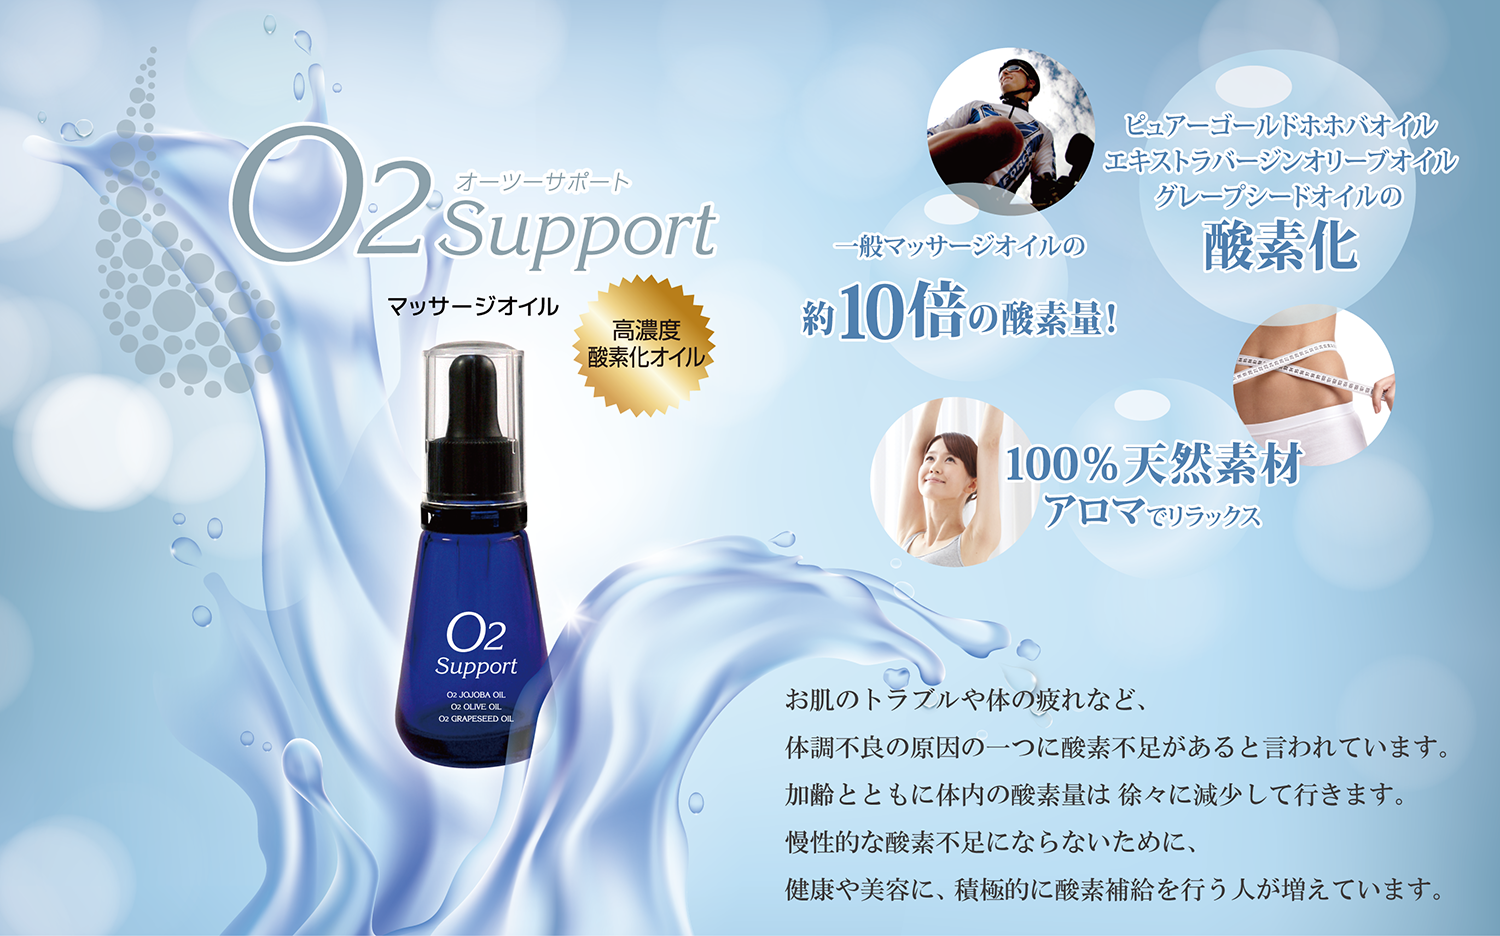 グトルツリー 高濃度酸素に注目したO2シリーズが人気 / O2 support